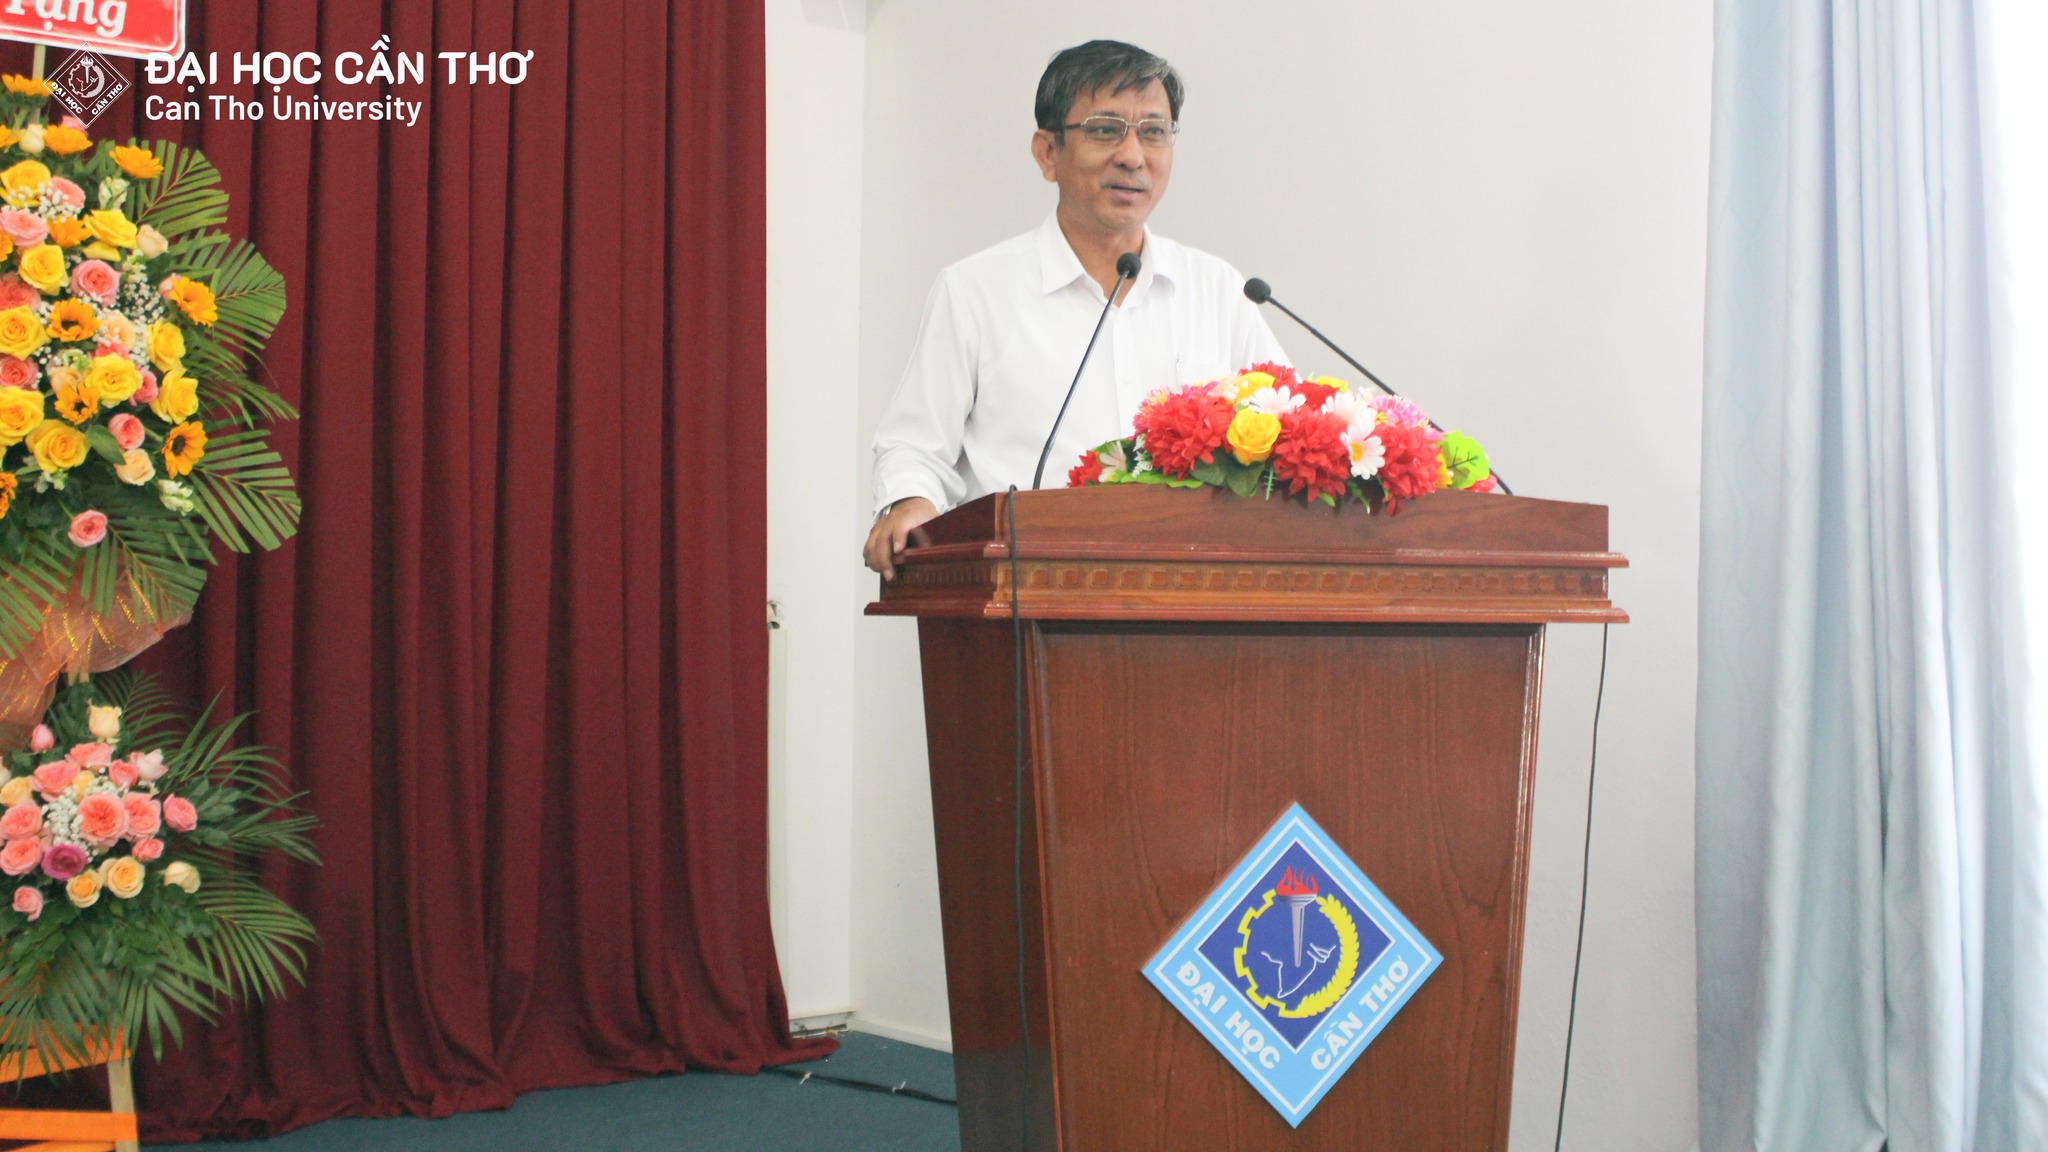  PGS.TS. Trần Trung Tính, Phó Hiệu trưởng Trường ĐHCT, phát biểu khai mạc vòng chung kết cuộc thi